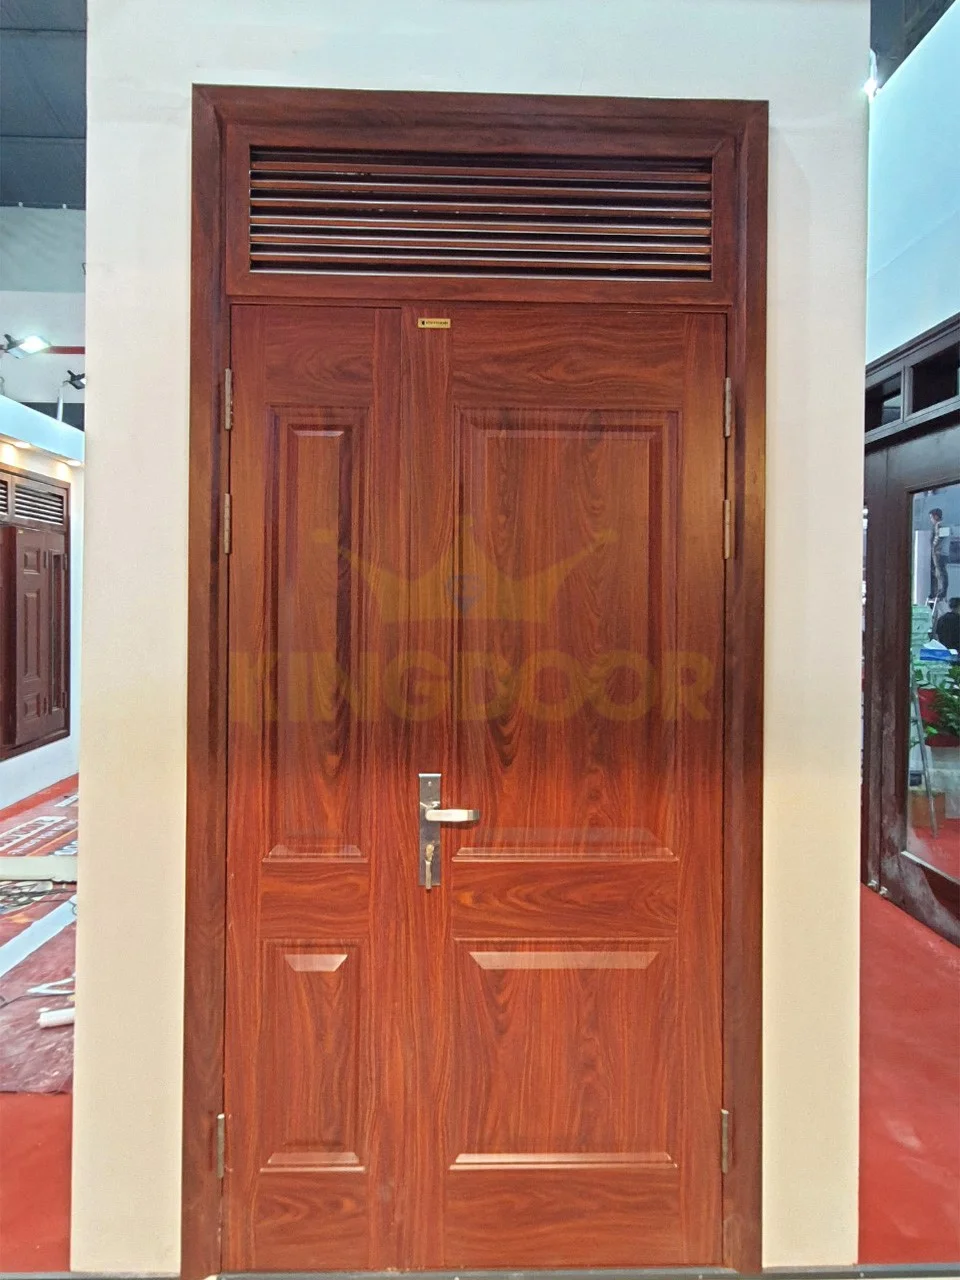 Nội, ngoại thất: Báo giá Cửa thép vân gỗ tại Đà Lạt – Cửa chính, cửa sổ Cua-thep-van-go-2-canh-tai-Da-Lat-2